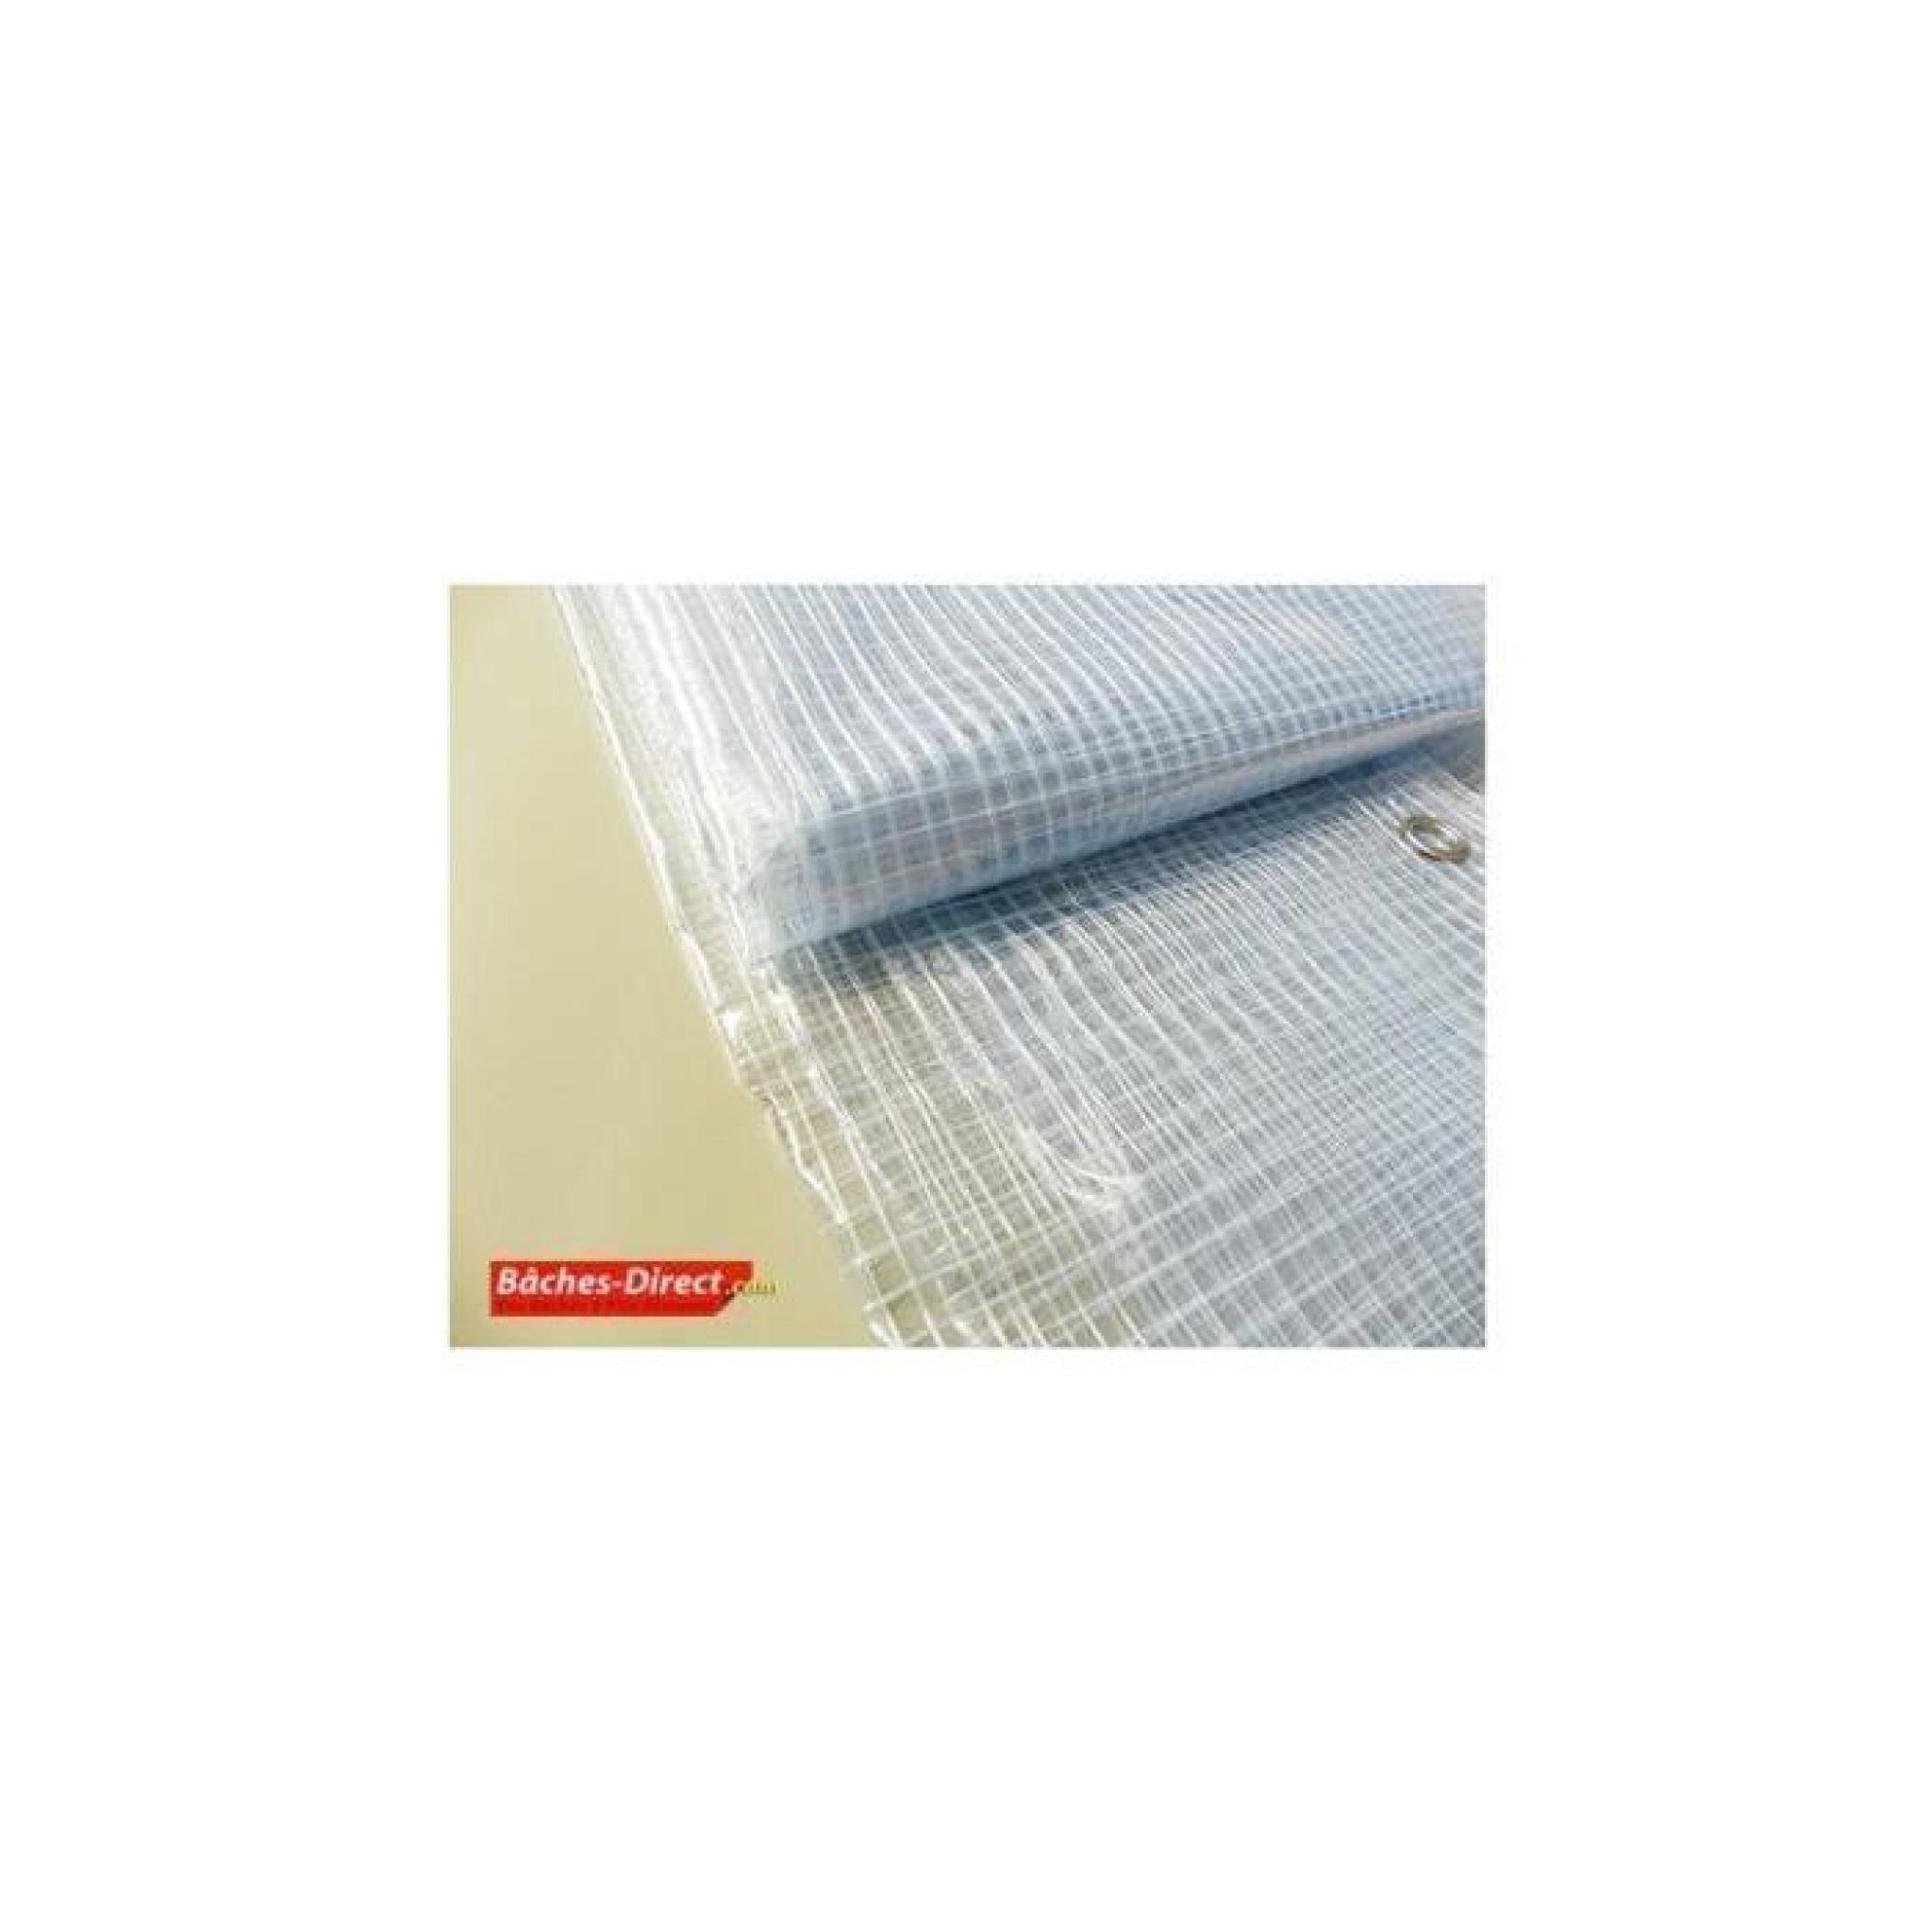 BACHES DIRECT - Bâche Pergola 400 g/m² - 3.8 x 4 m - bache transparente pour toile de pergola - bache imperméable Transparente Armée pas cher